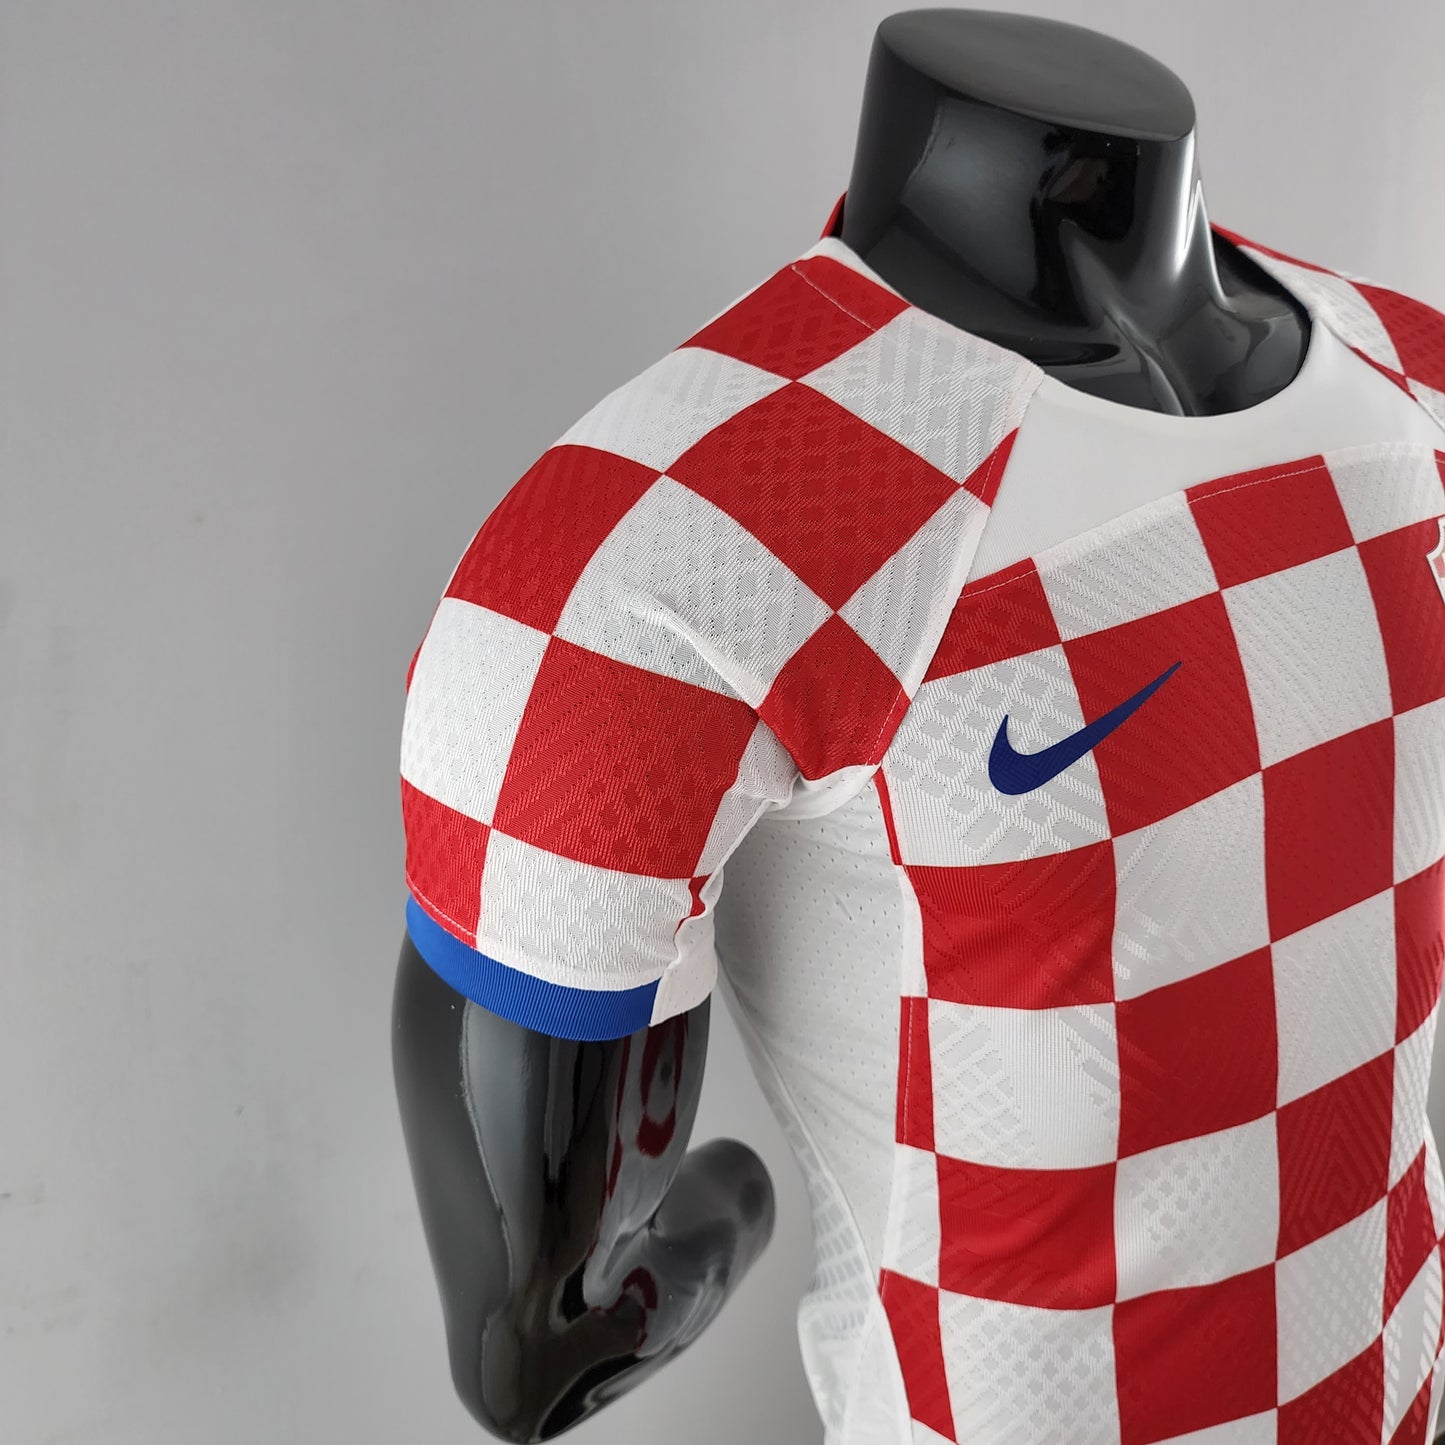 Camisa Jogador Croácia Home Copa do Mundo 2022